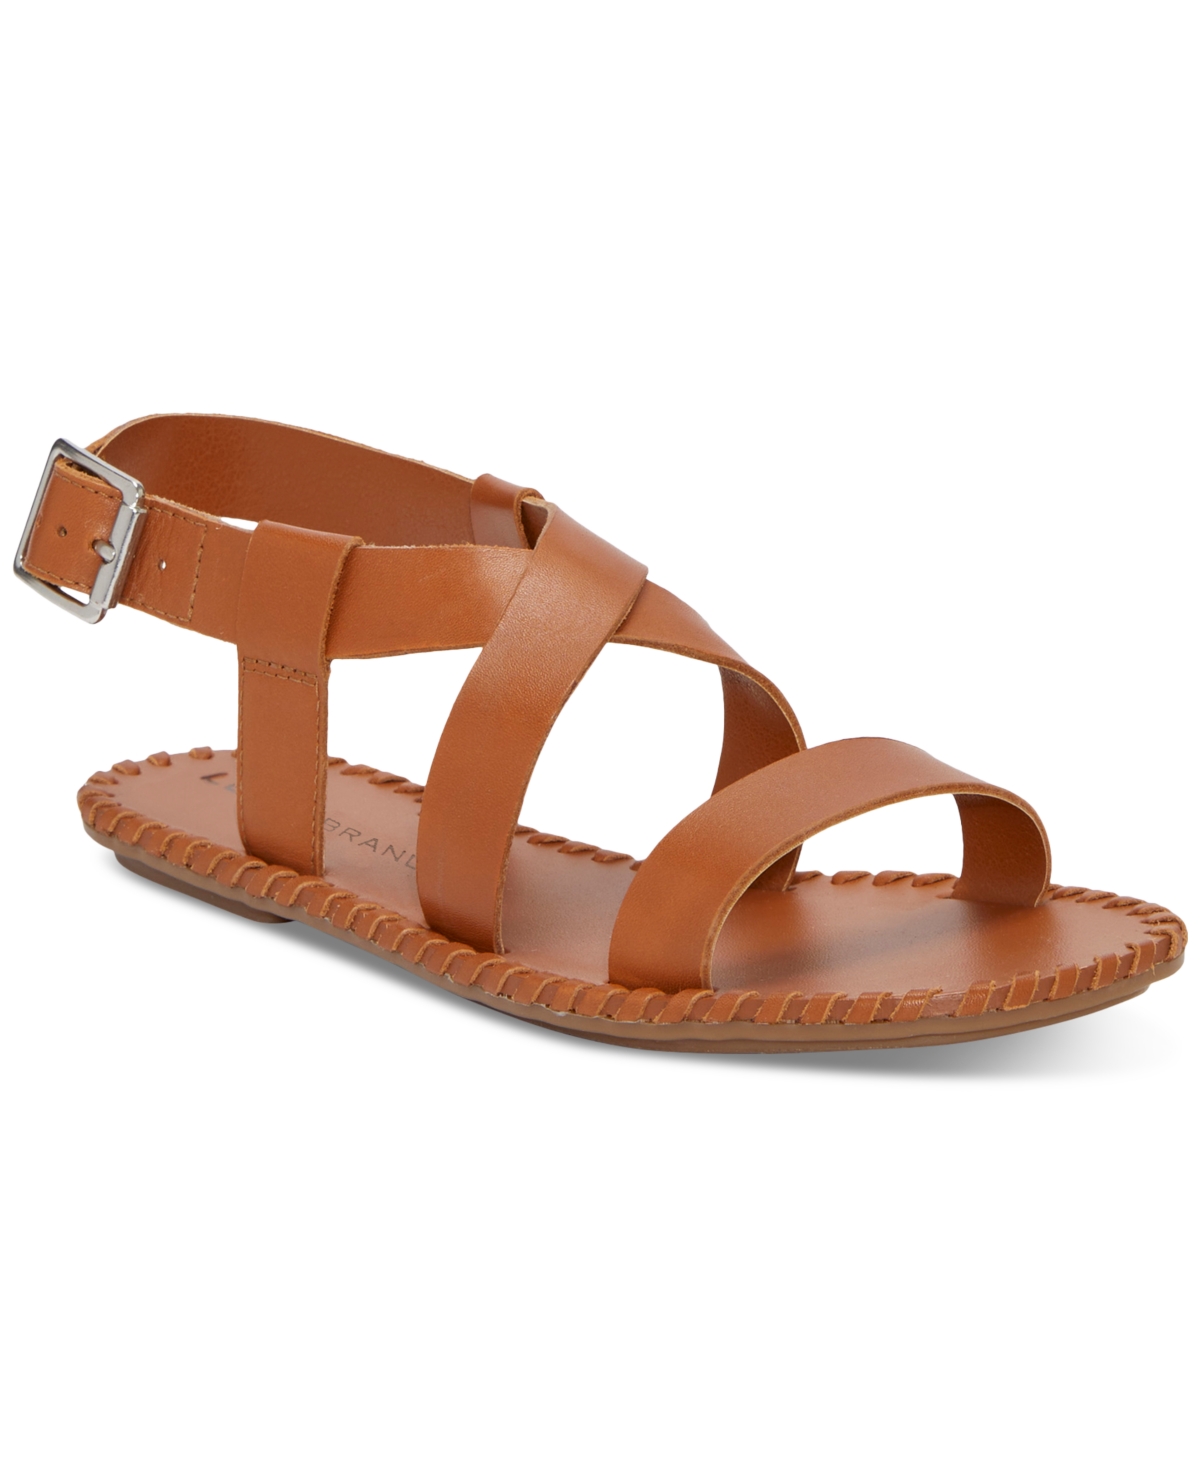 Women's Zelek Crisscross Flat Sandals - Gold Platino Leather